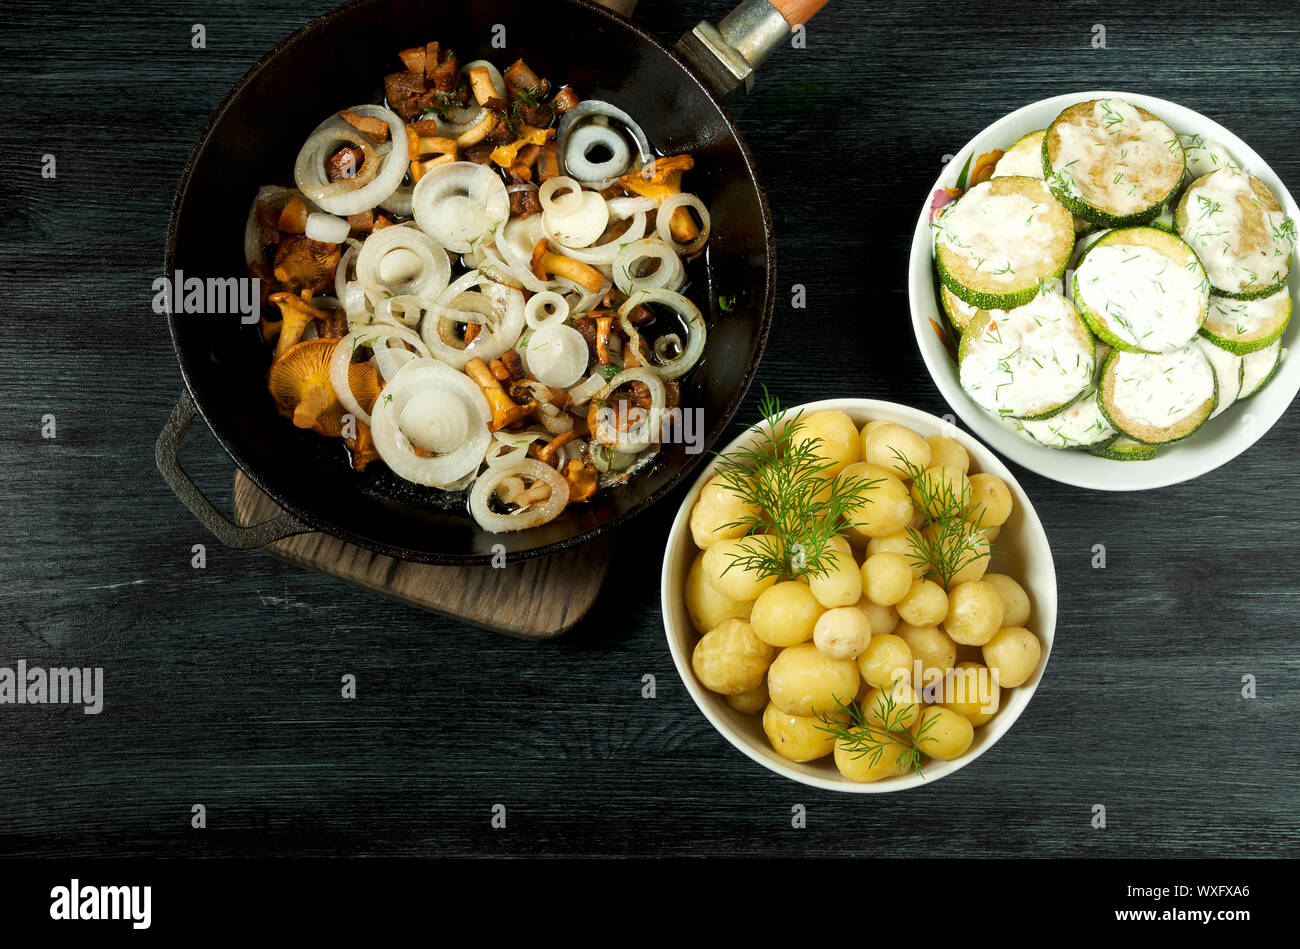 Las verduras en el fondo. Salsa de calabacín fritas en un plato. Los jóvenes patatas cocidas con eneldo en un recipiente. Fried cantharellus mush Foto de stock